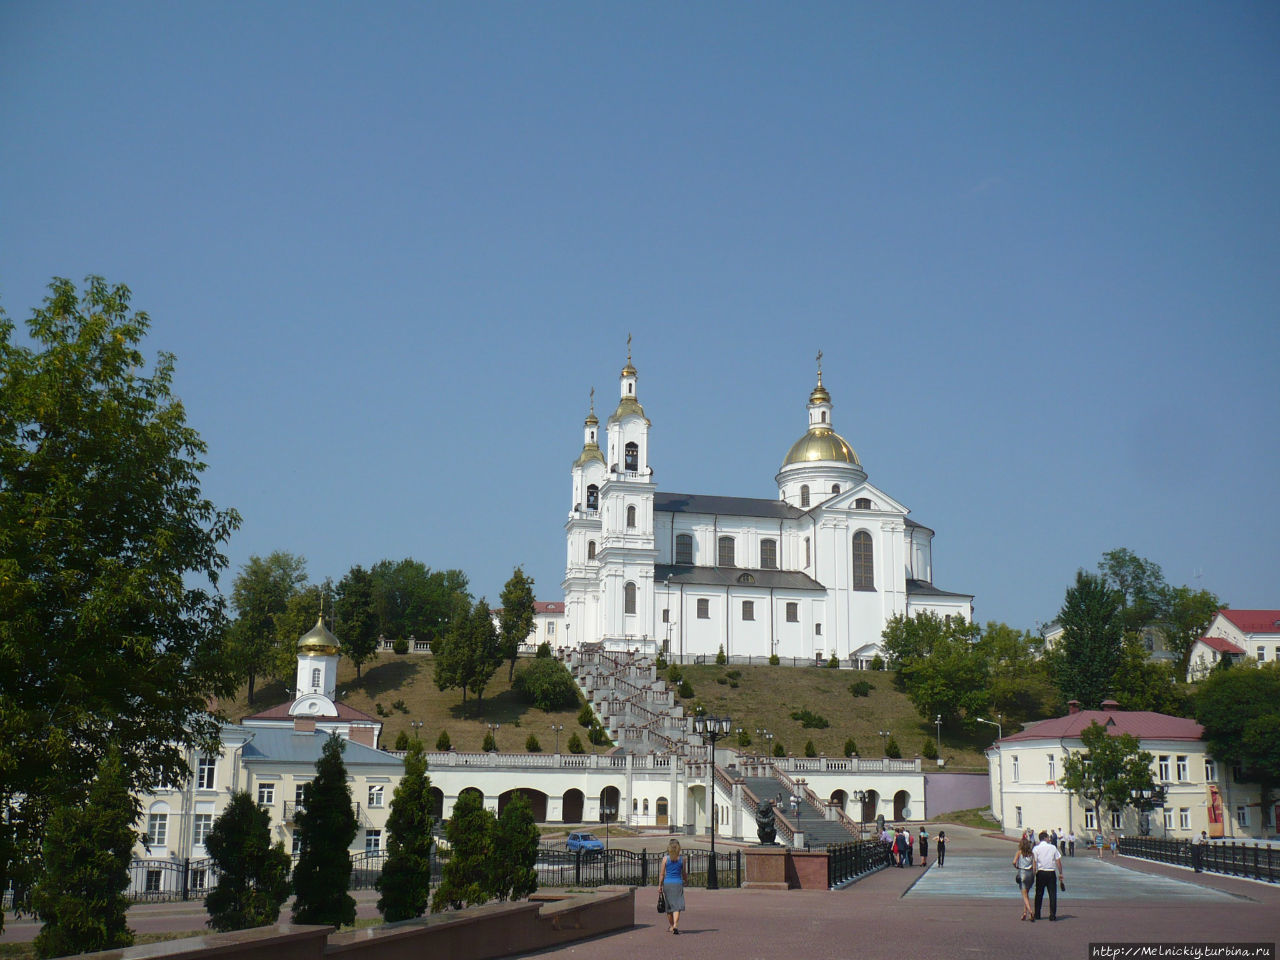 Свято-Успенский кафедральный собор Витебск, Беларусь